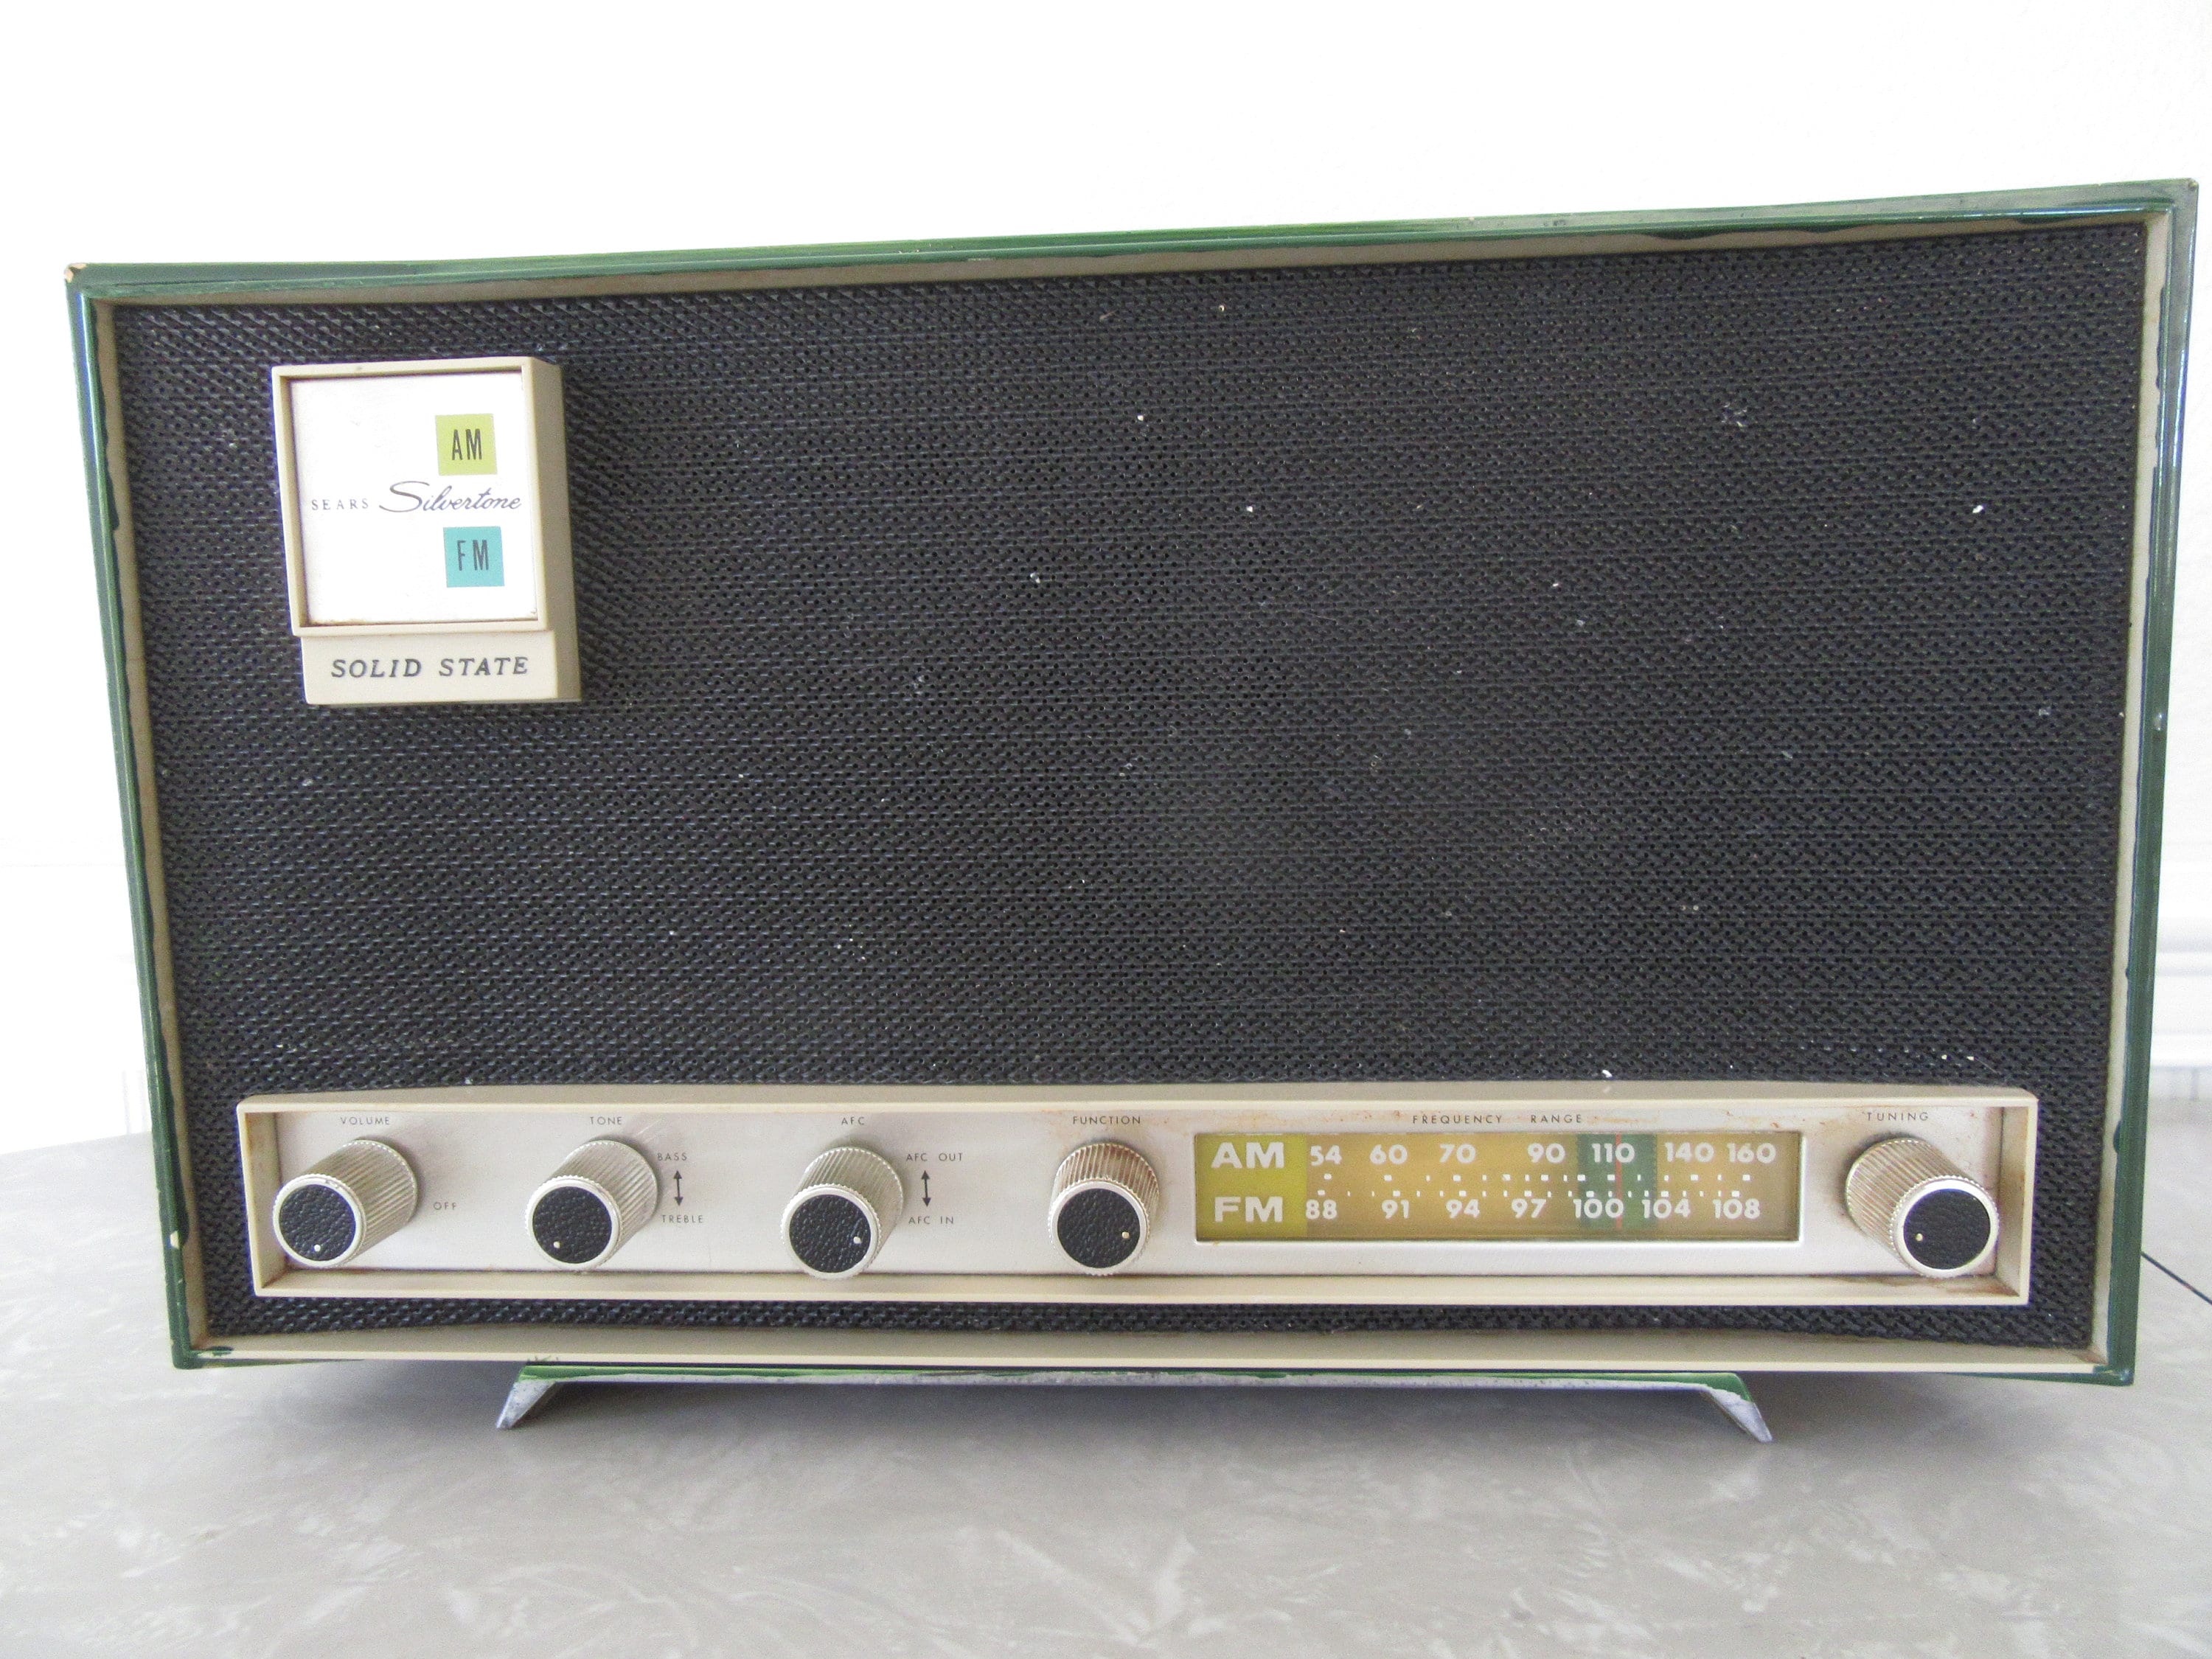 Poste radio fm 4,5 w poignée de transport ivoire style vintage retro 60's  NEDIS RDFM5000BG